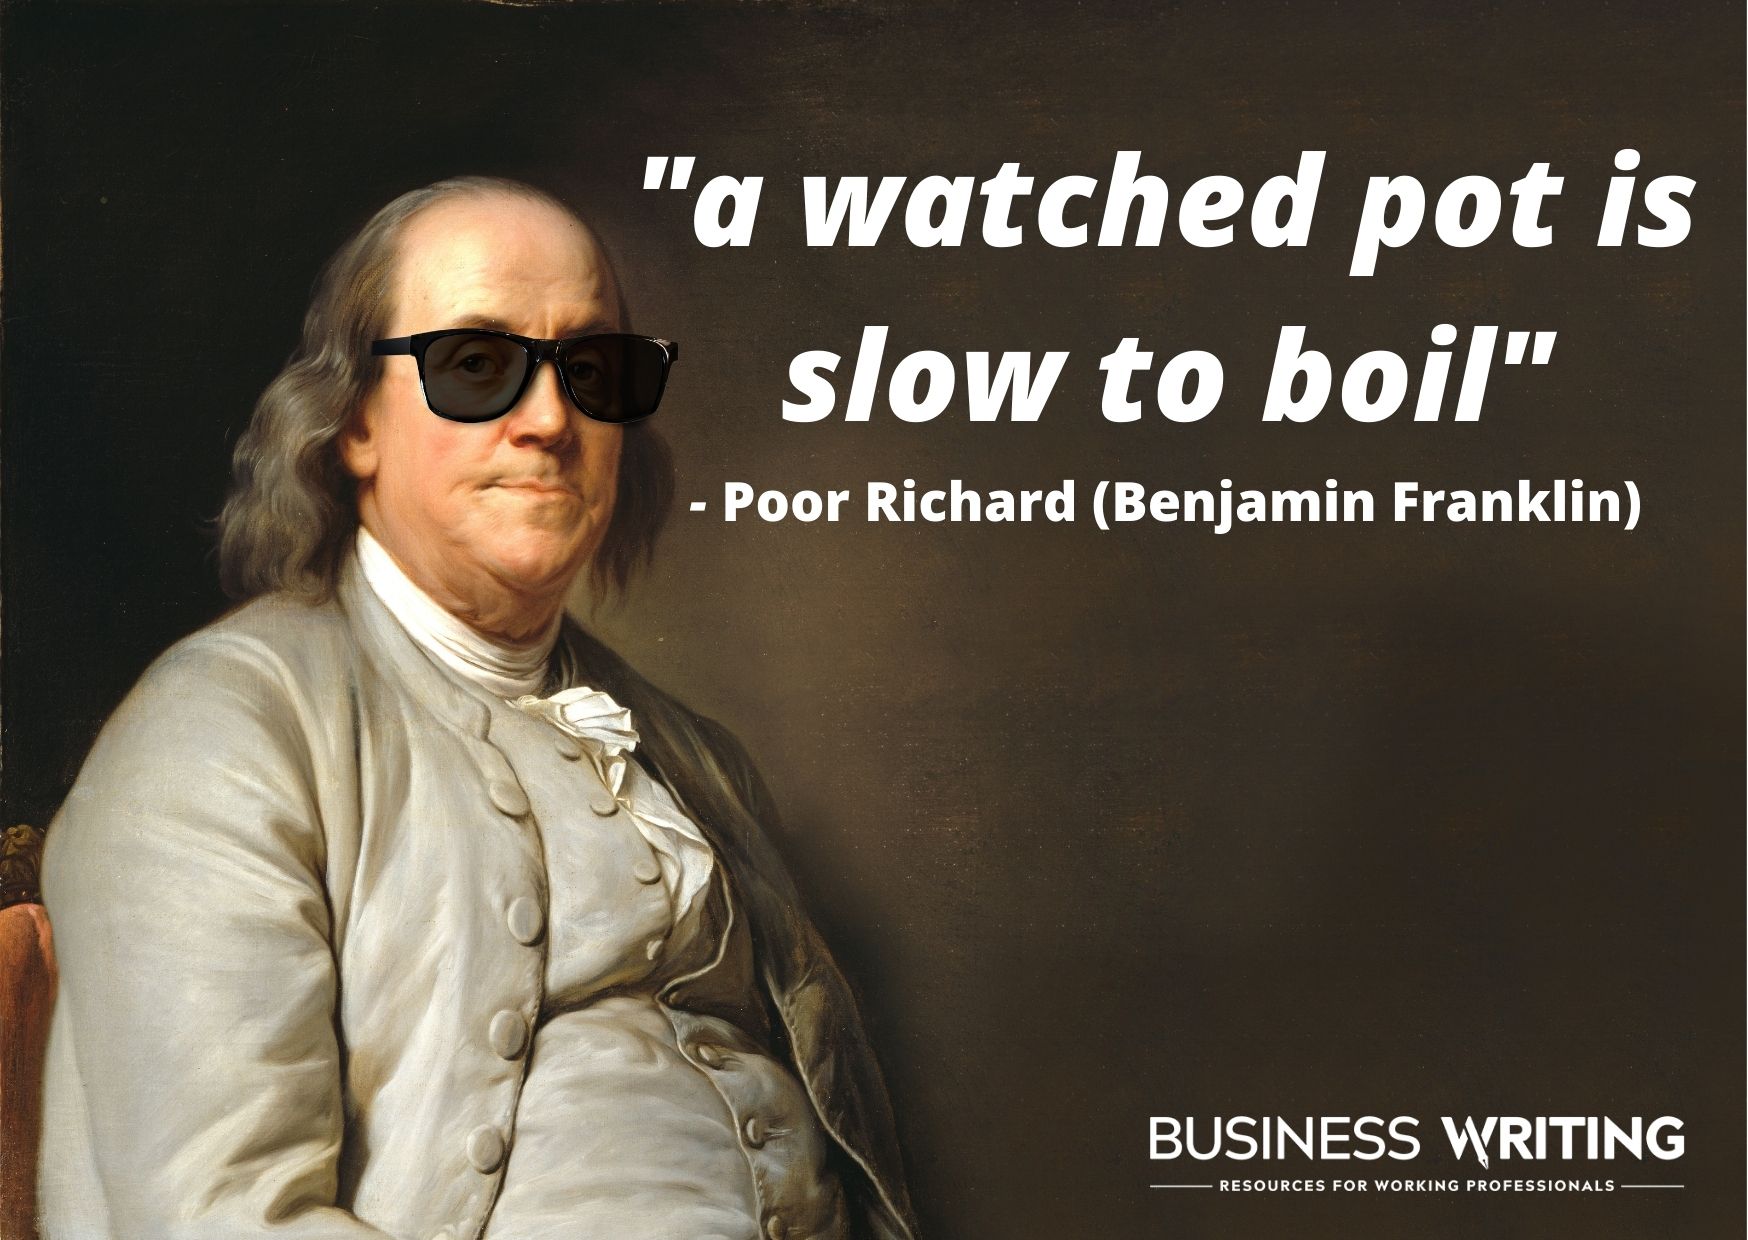 Benjamin Franklin's quote 